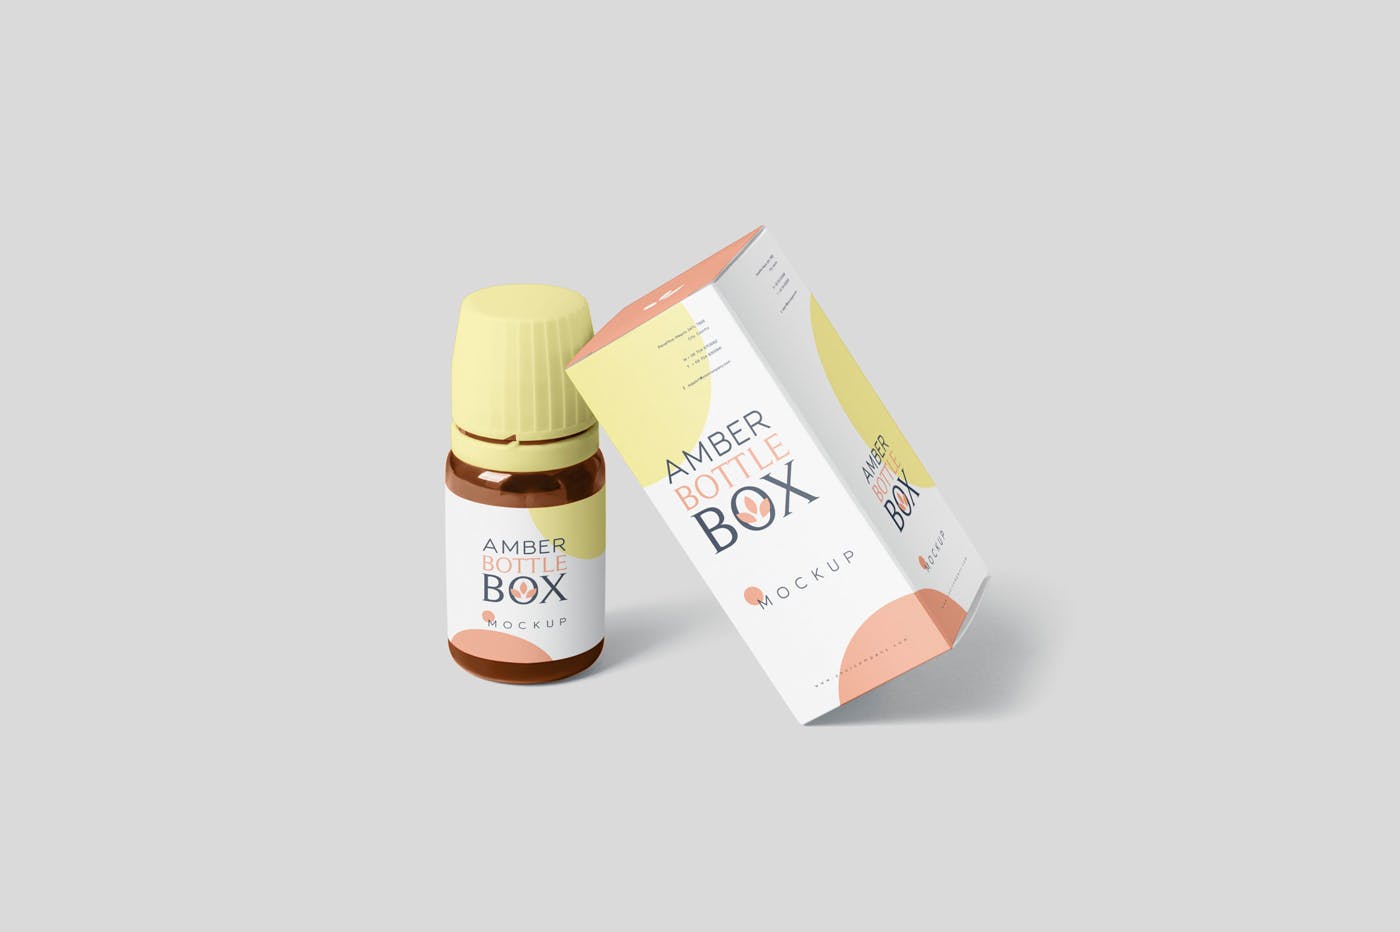 药物瓶&包装纸盒设计图蚂蚁素材精选模板 Amber Bottle Box Mockup Set插图(4)